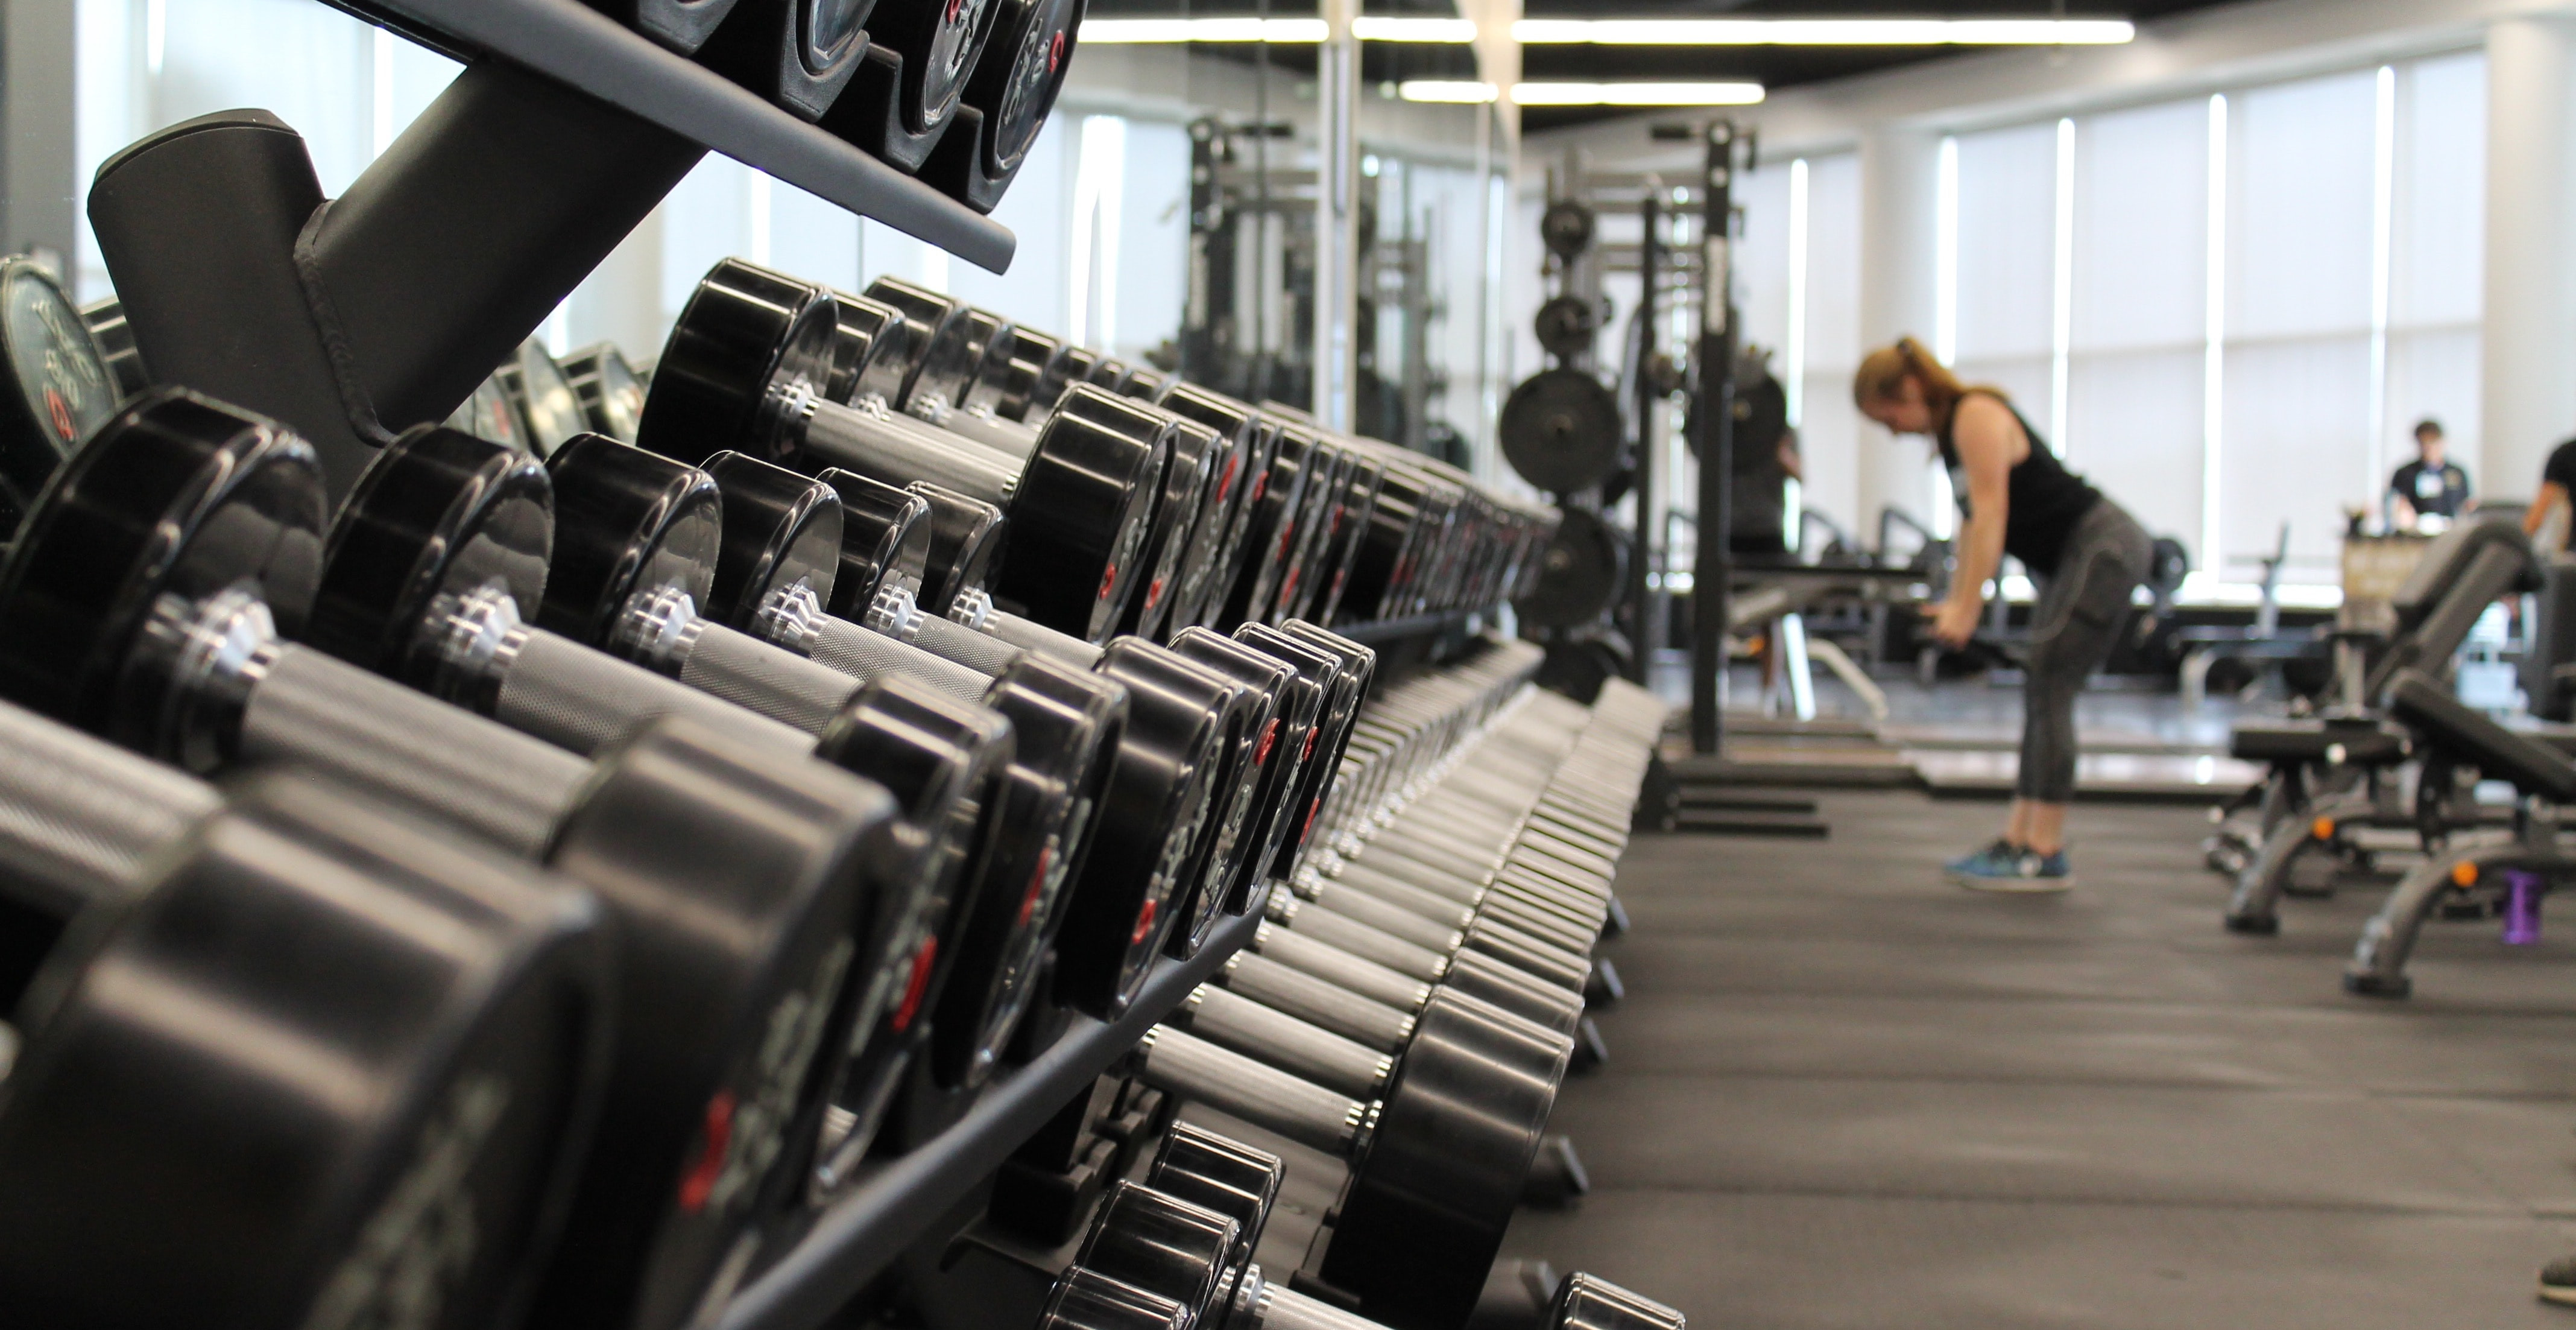 Phòng tập gym tại Fort Hood là một trong những nơi lý tưởng để tăng cường sức khỏe và thể chất của bạn. Hãy cùng chiêm ngưỡng hình ảnh về không gian tập luyện hiện đại, các thiết bị tập gym đầy đủ và đội ngũ huấn luyện chuyên nghiệp.